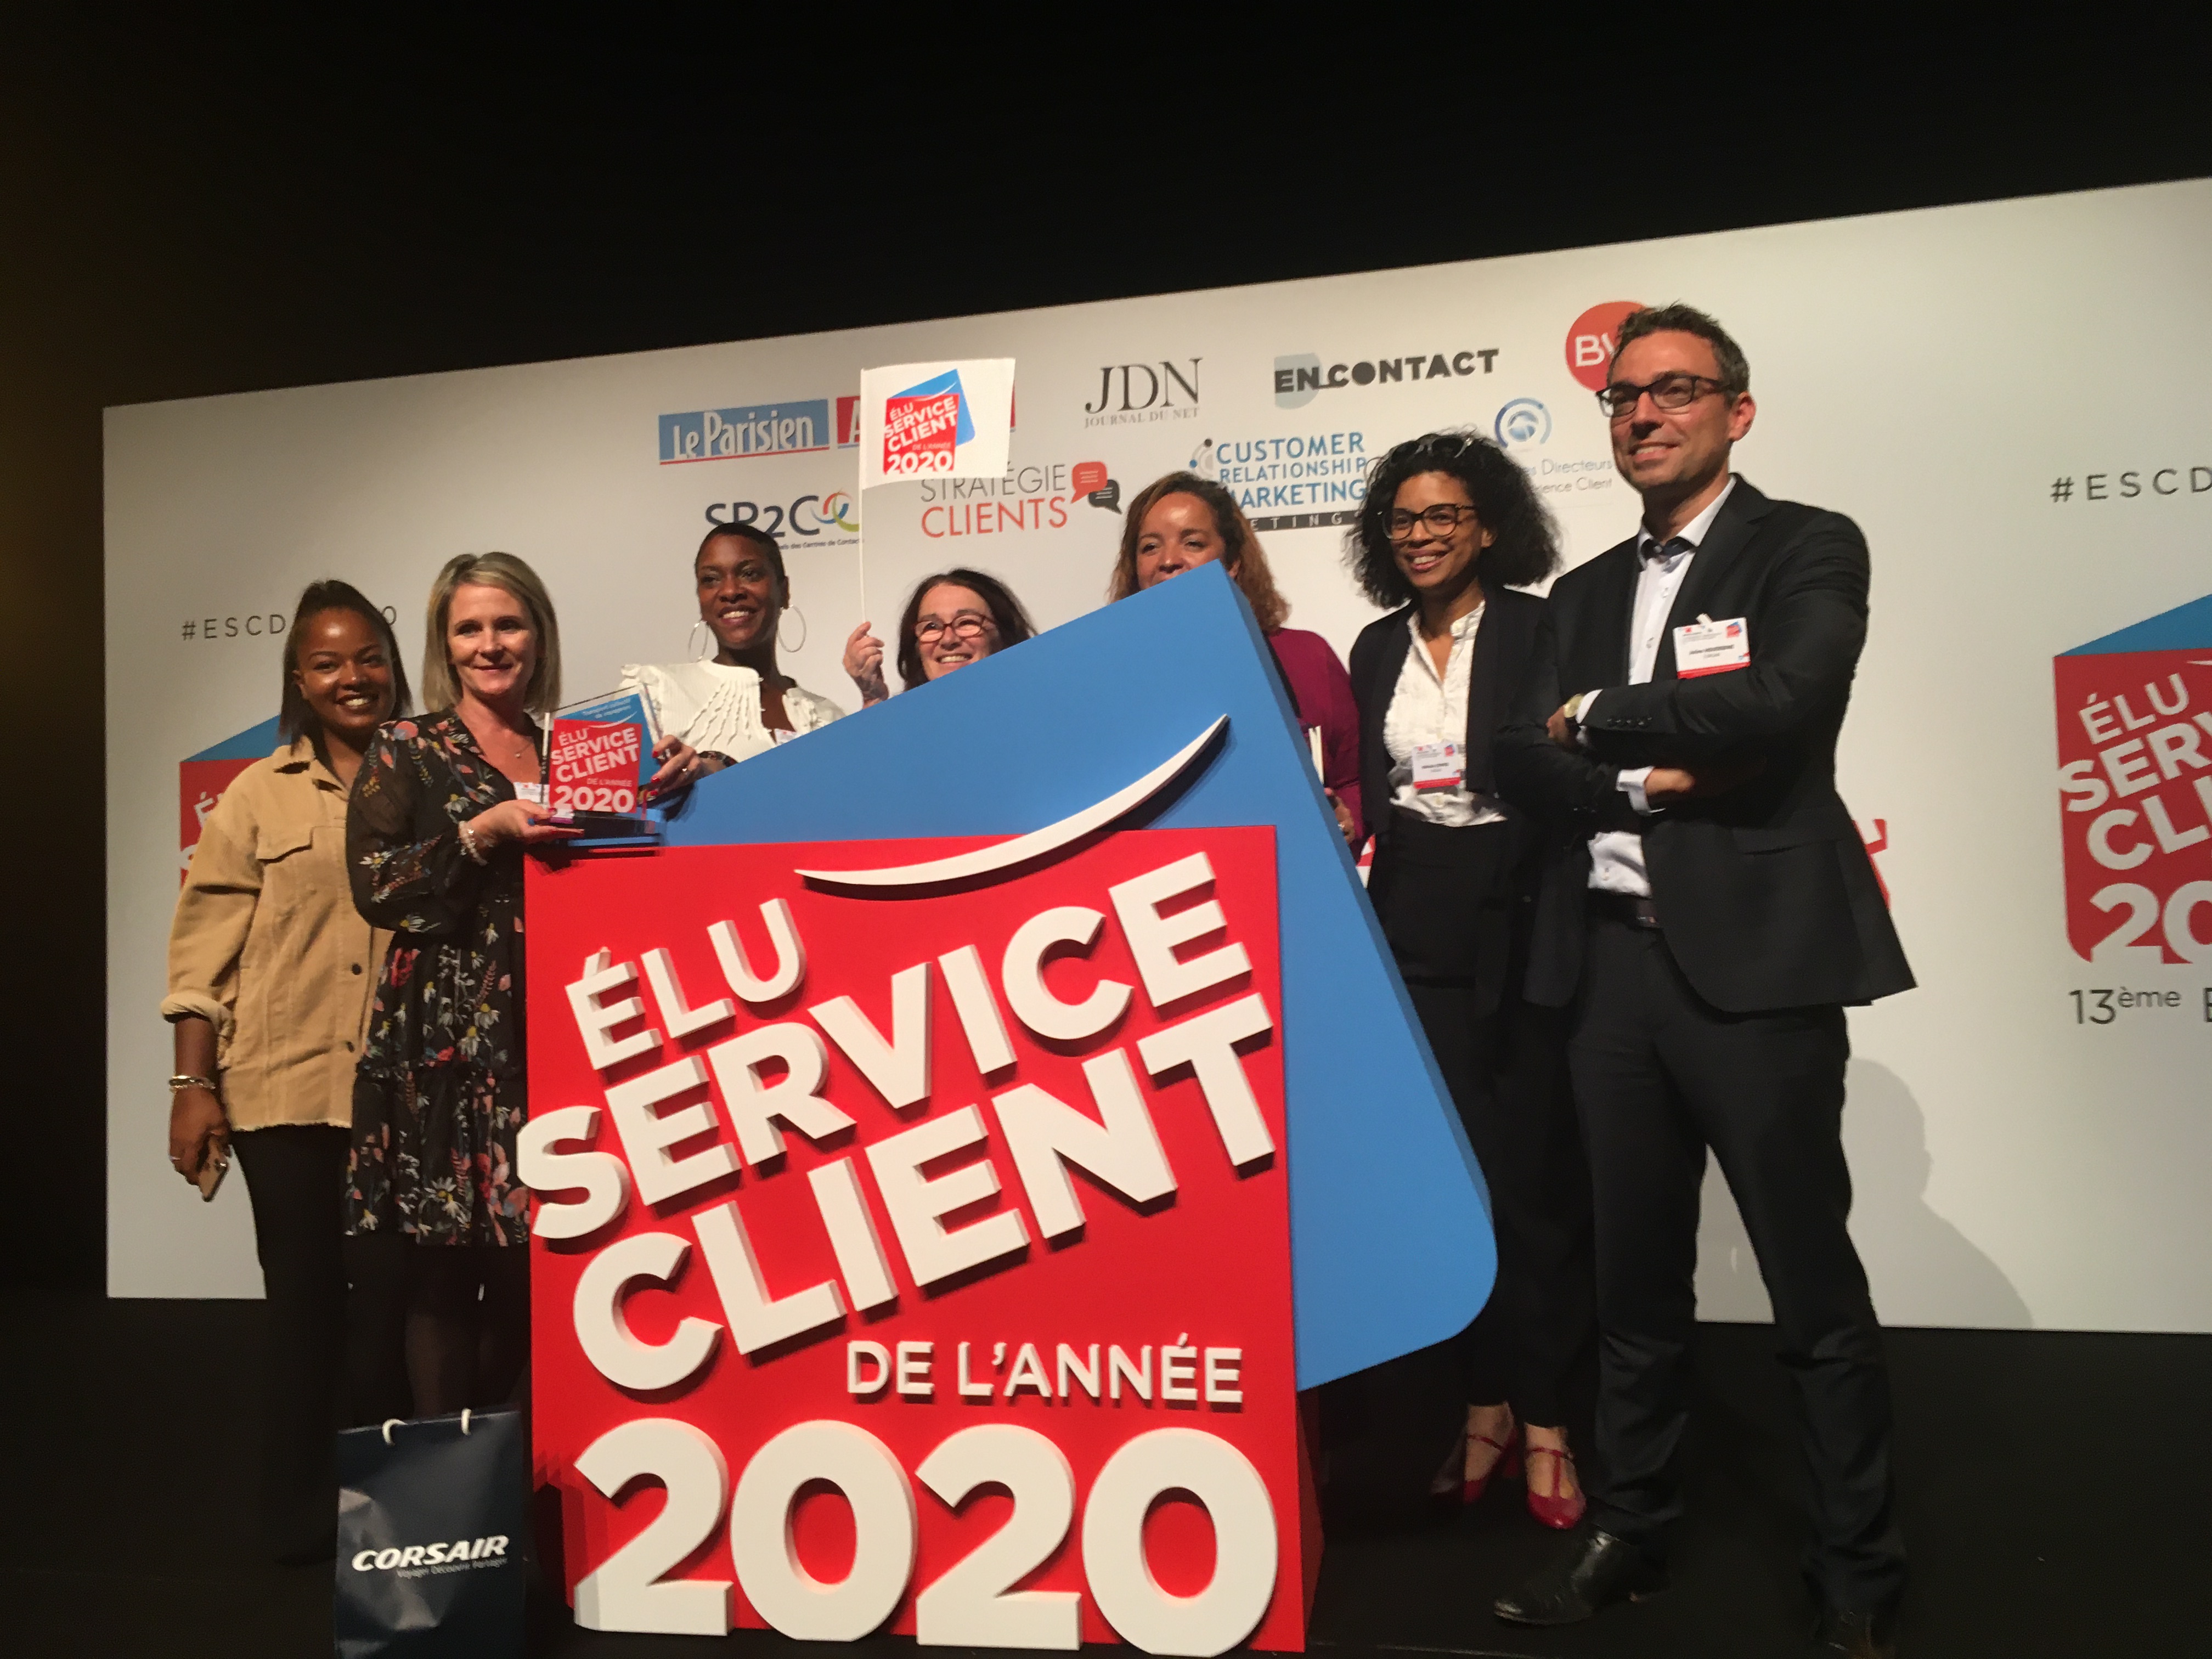 Corsair remporte le prix «Elu Service Client de l’année 2020» pour la catégorie transport